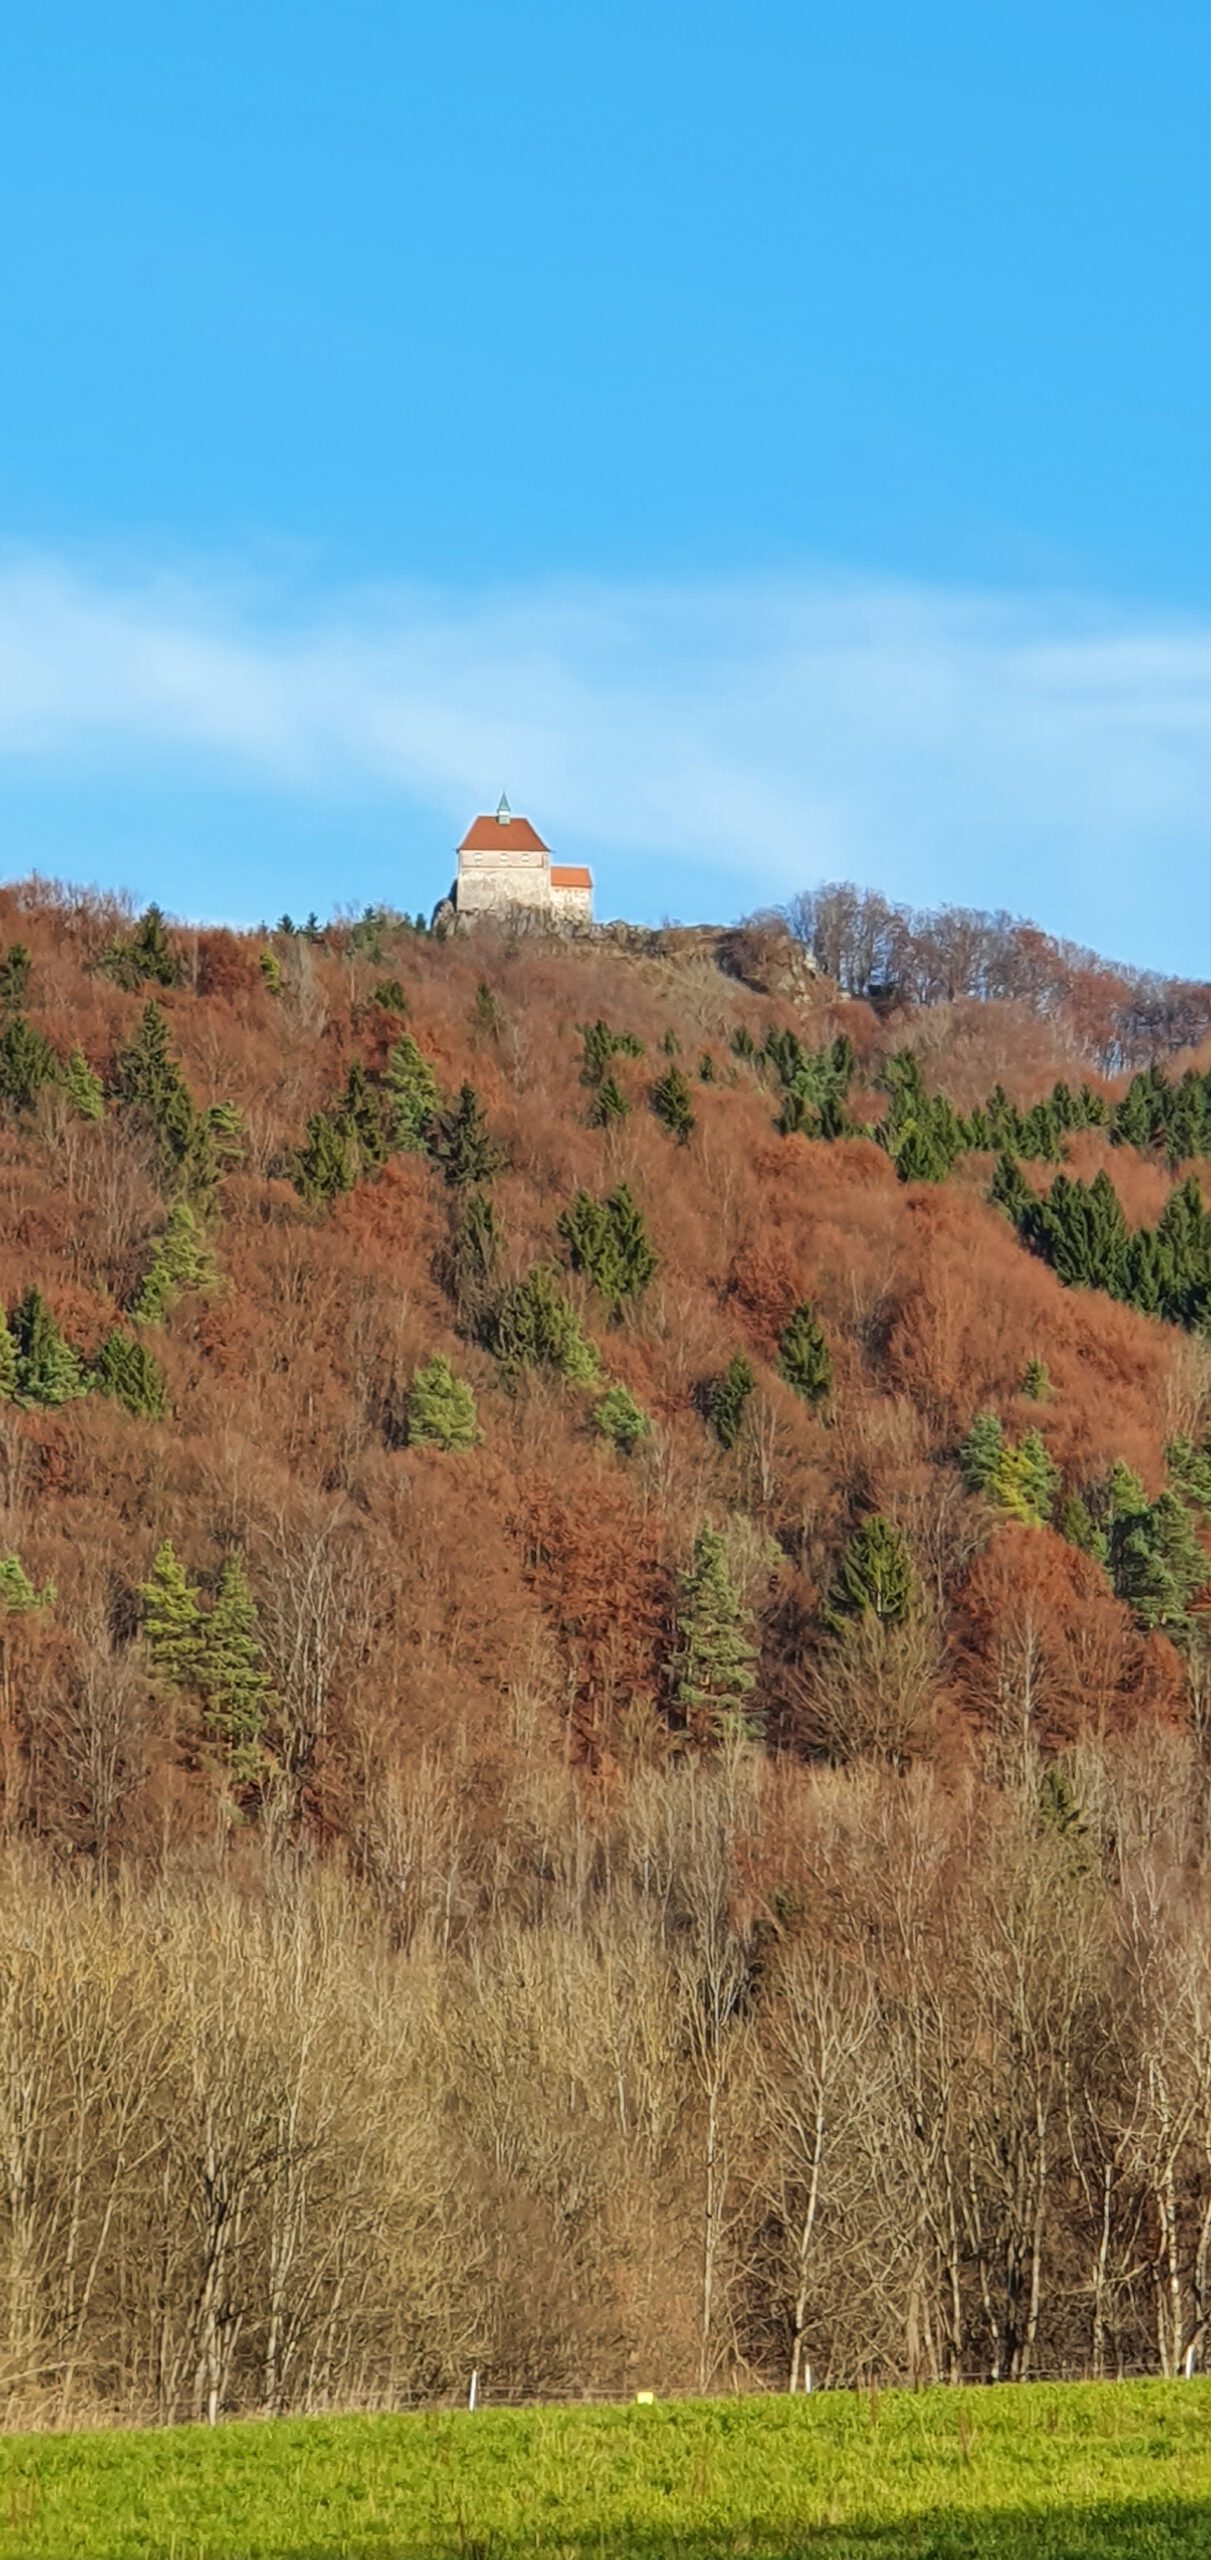 Burg Hohenstein